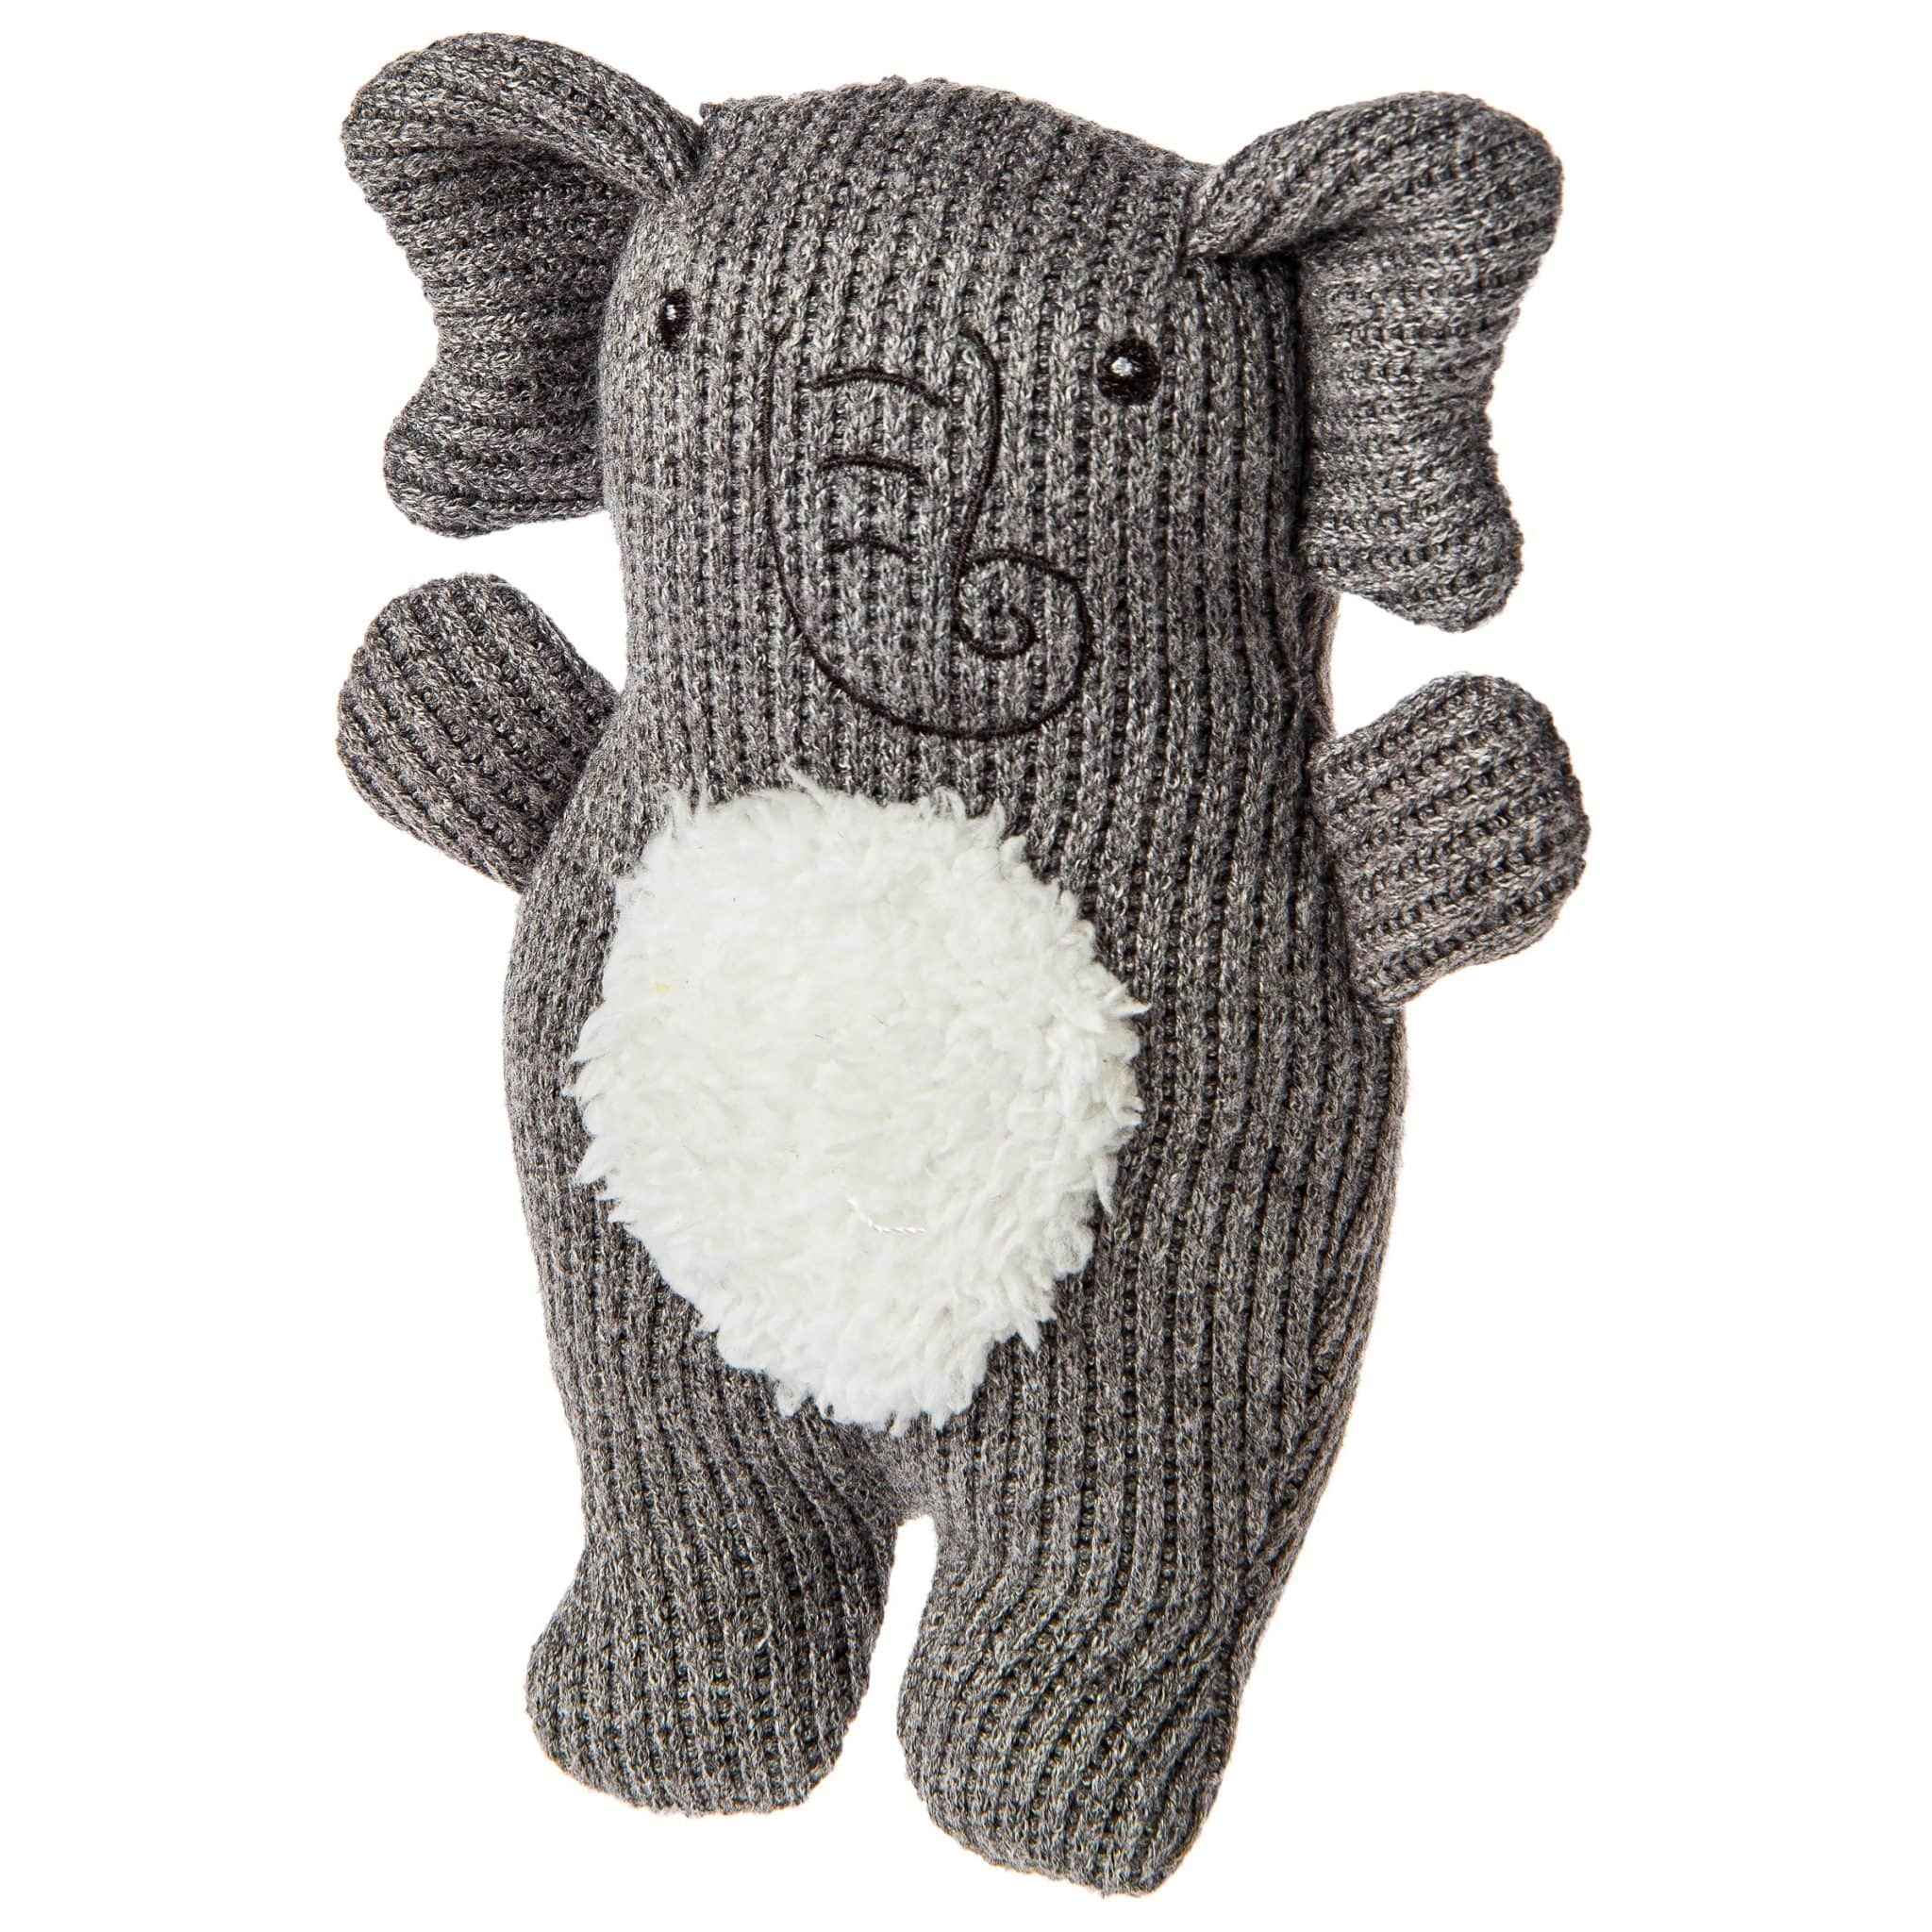 Knitted Nursery Elephant - Twinkle Twinkle Little One